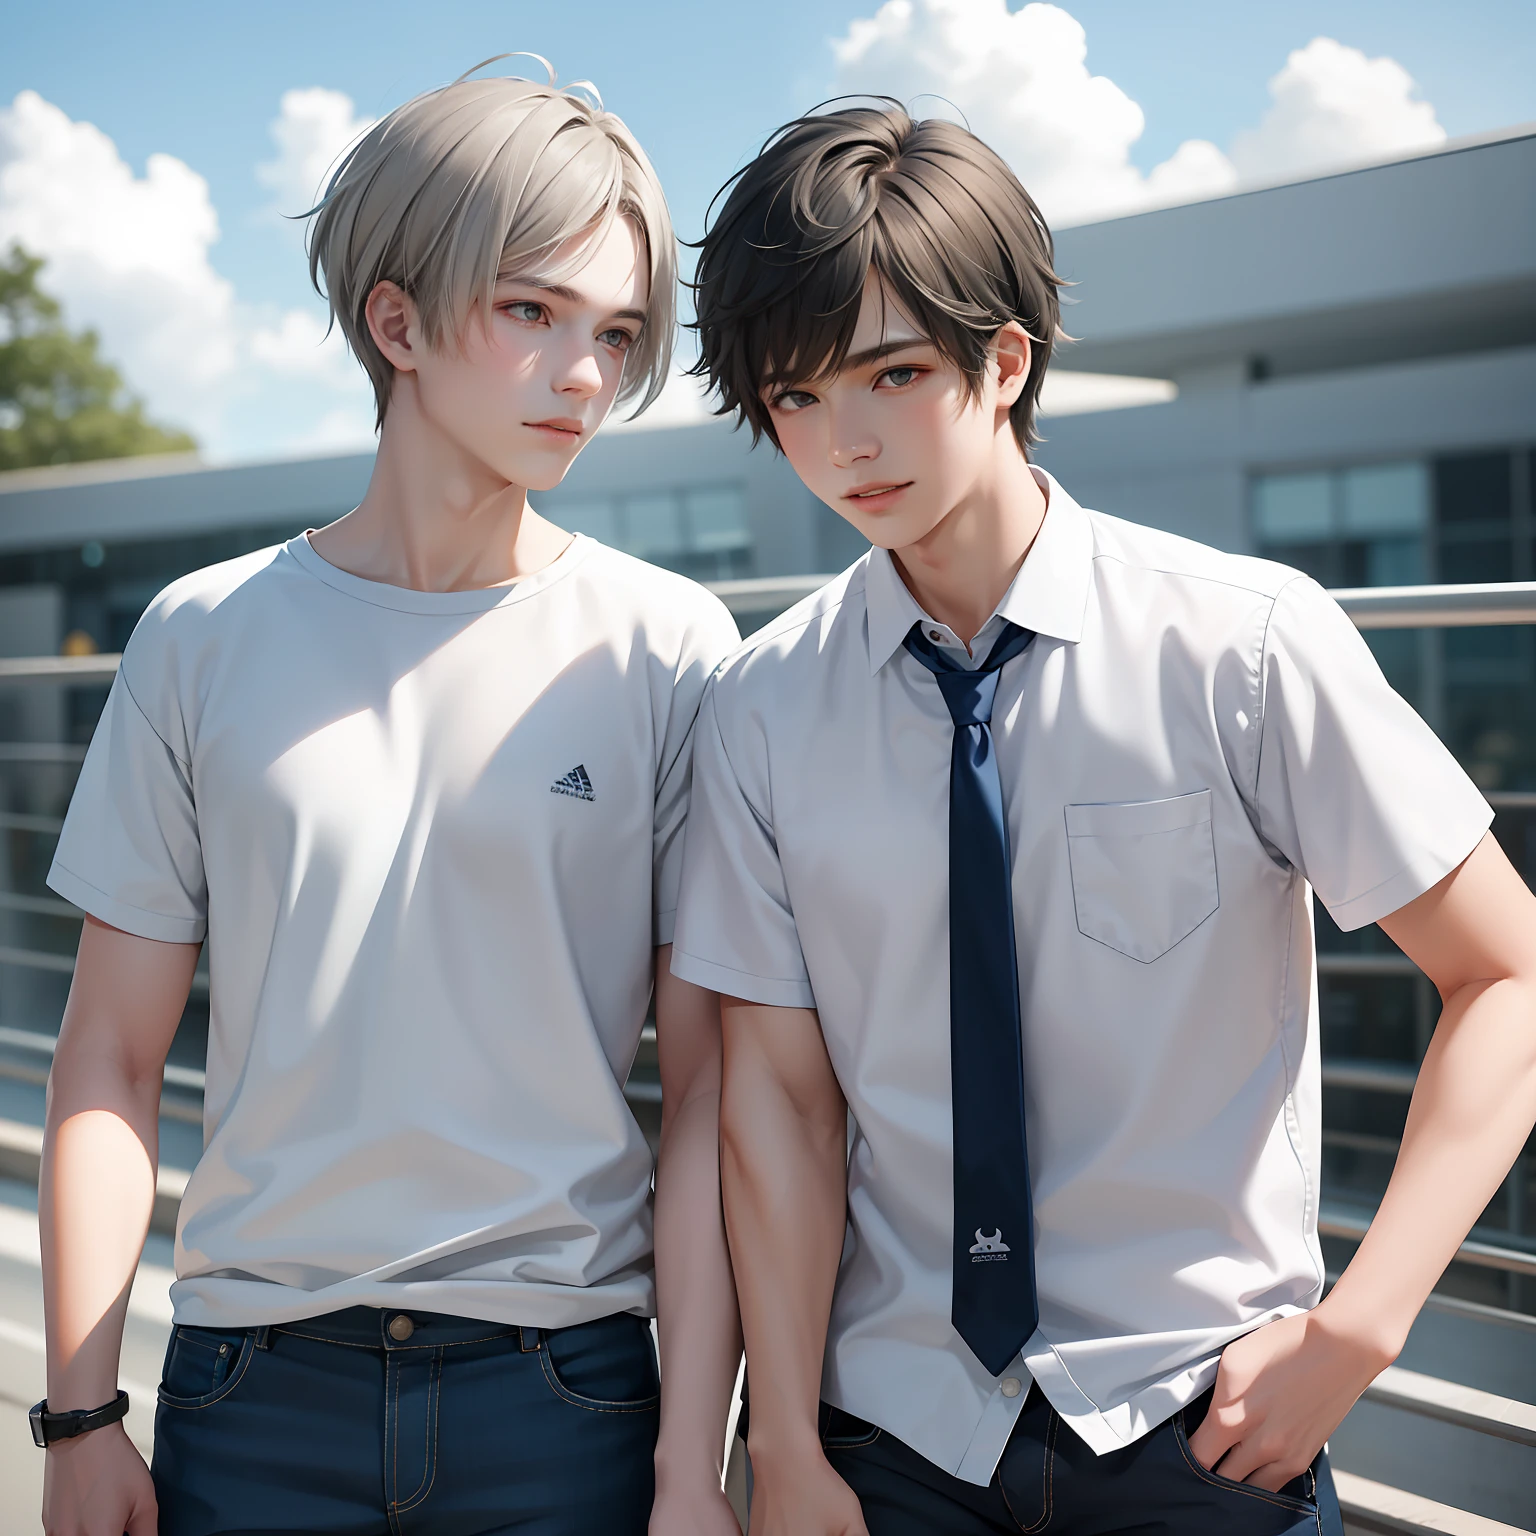 Dos amigos adolescentes de 15 años con piel morena y cabello gris claro como las nubes en la escuela comparten un secreto de que son amigos casi como hermanos..